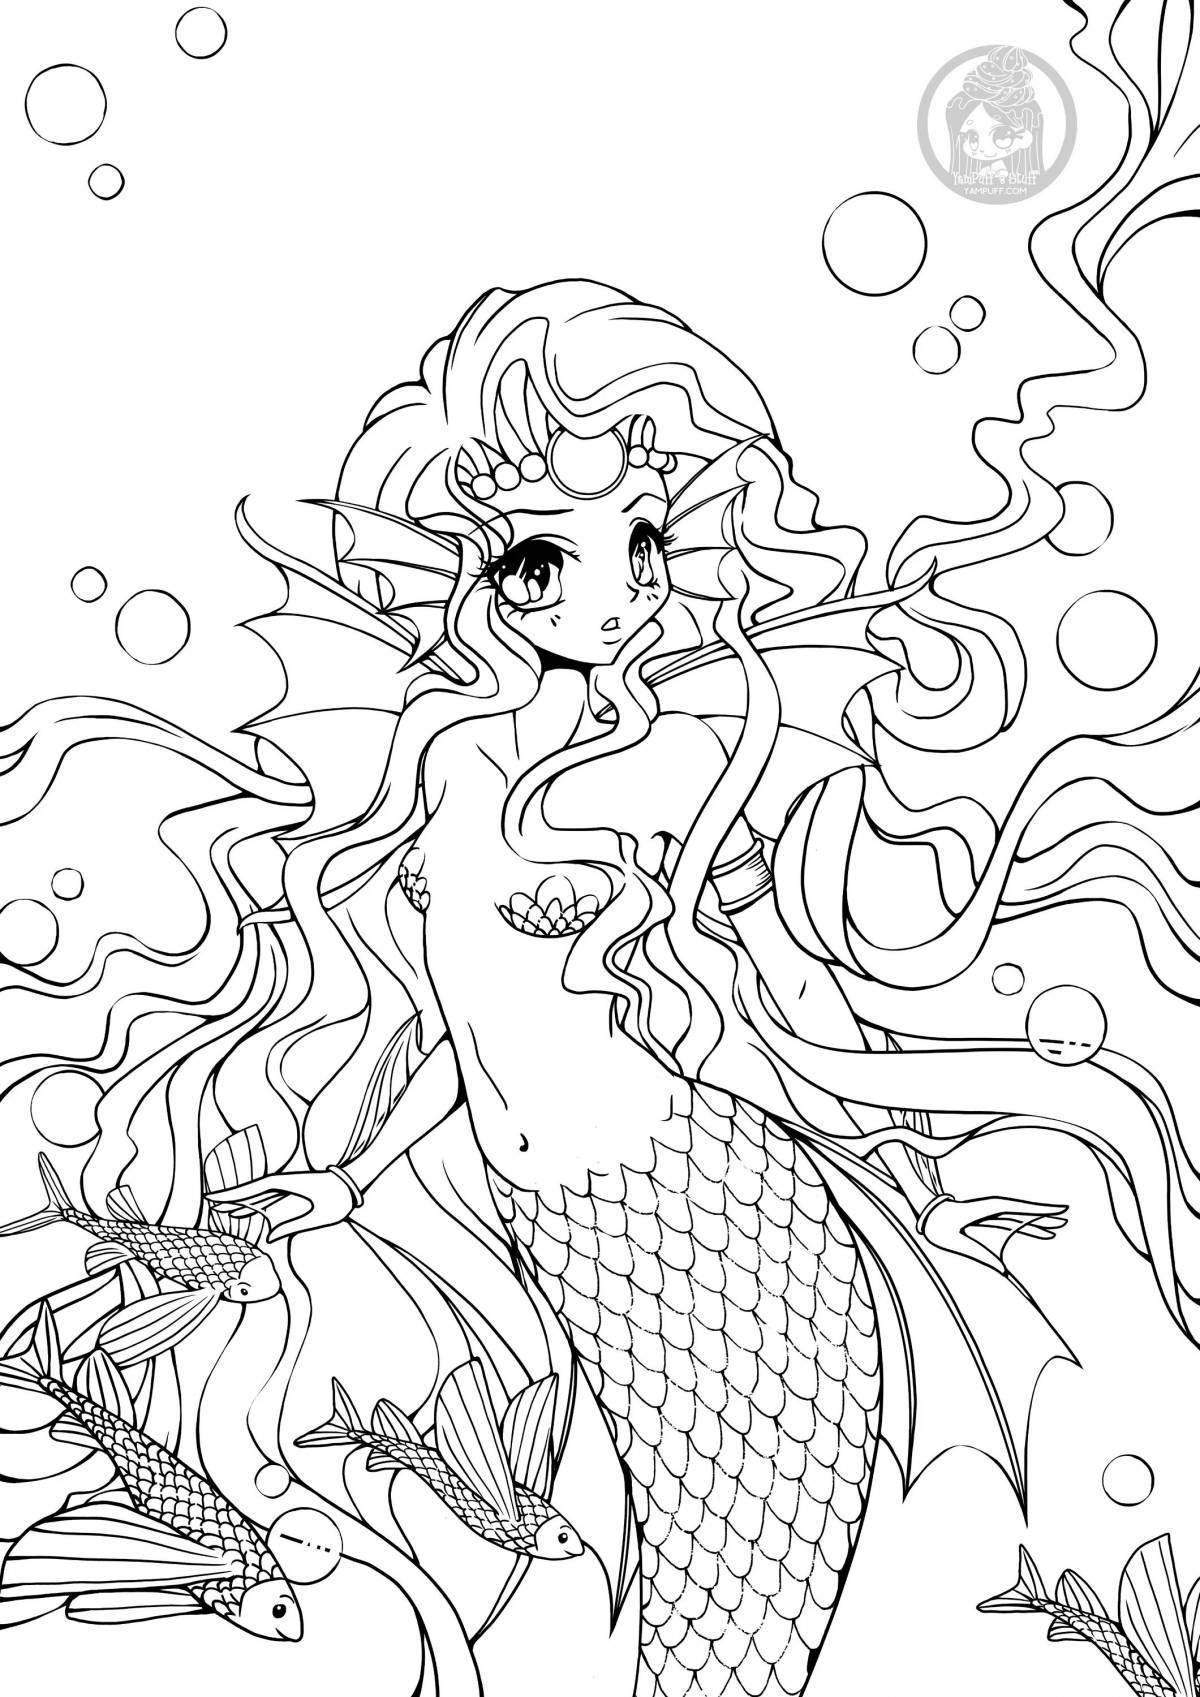 Fancy coloring anime mermaid